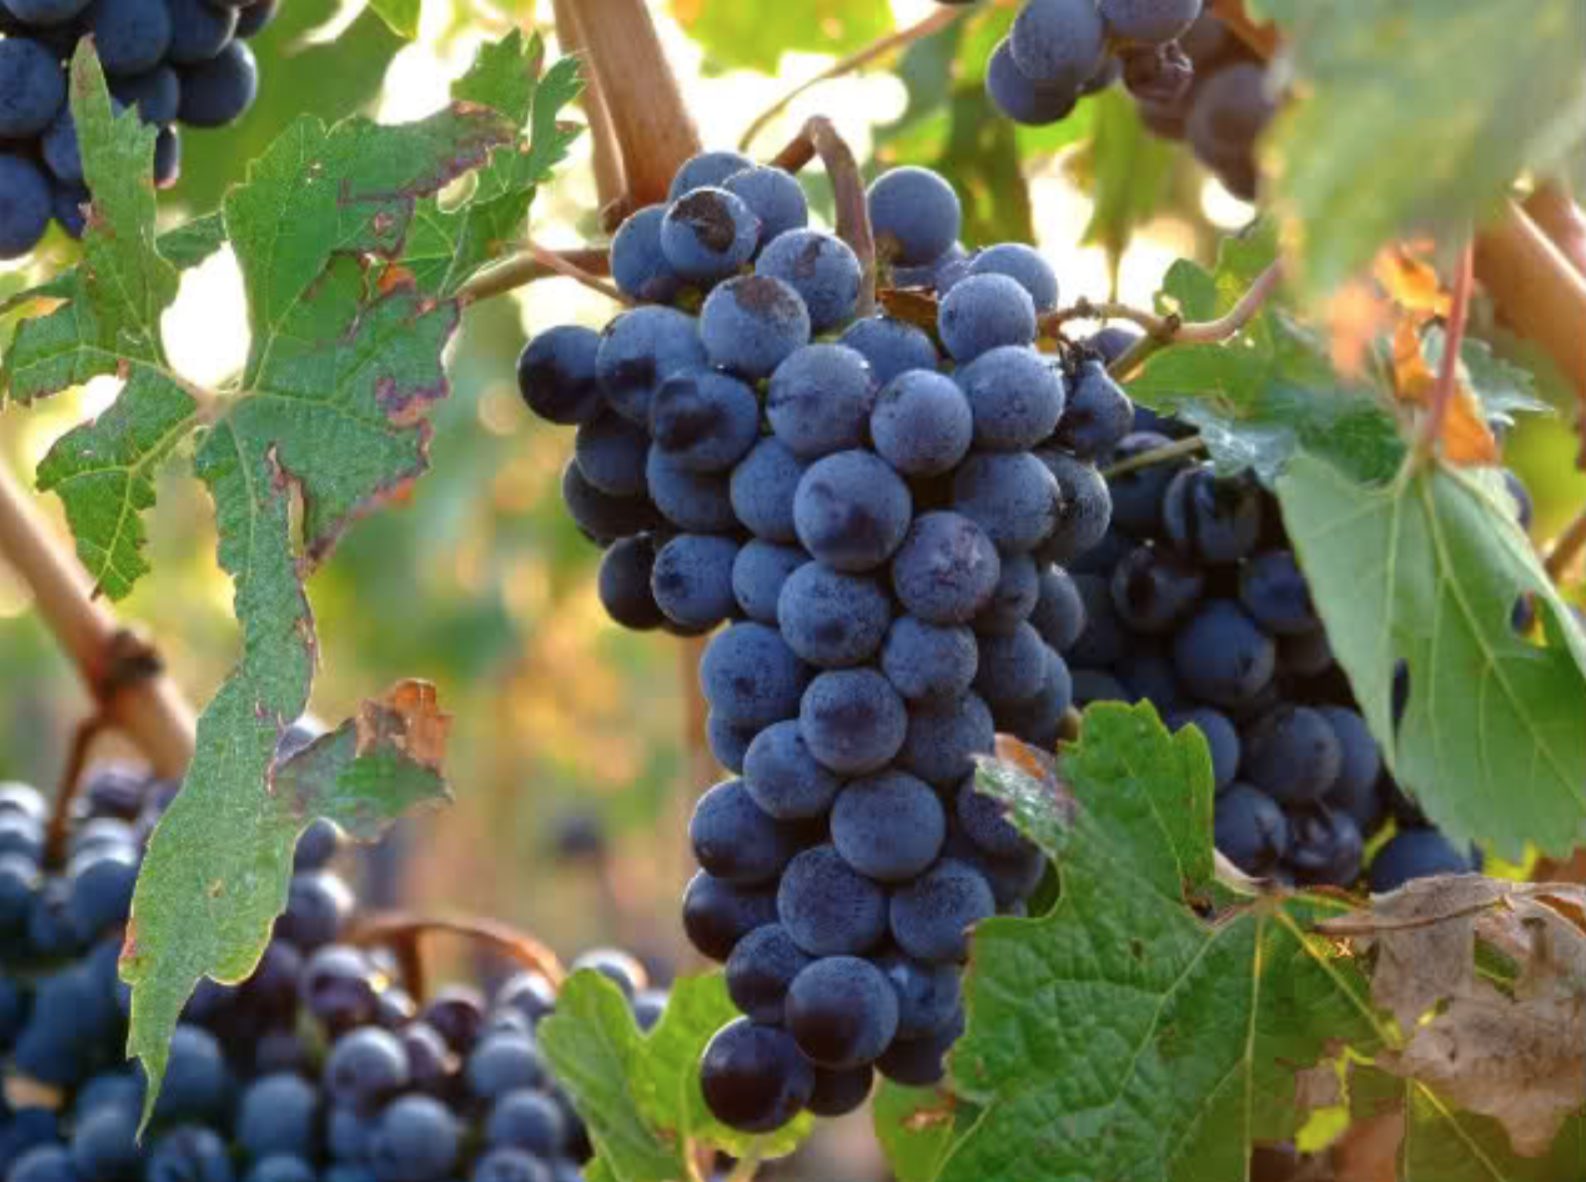 Manto Negro, a Mallorcan Grape Varietal, not a Balkan Country